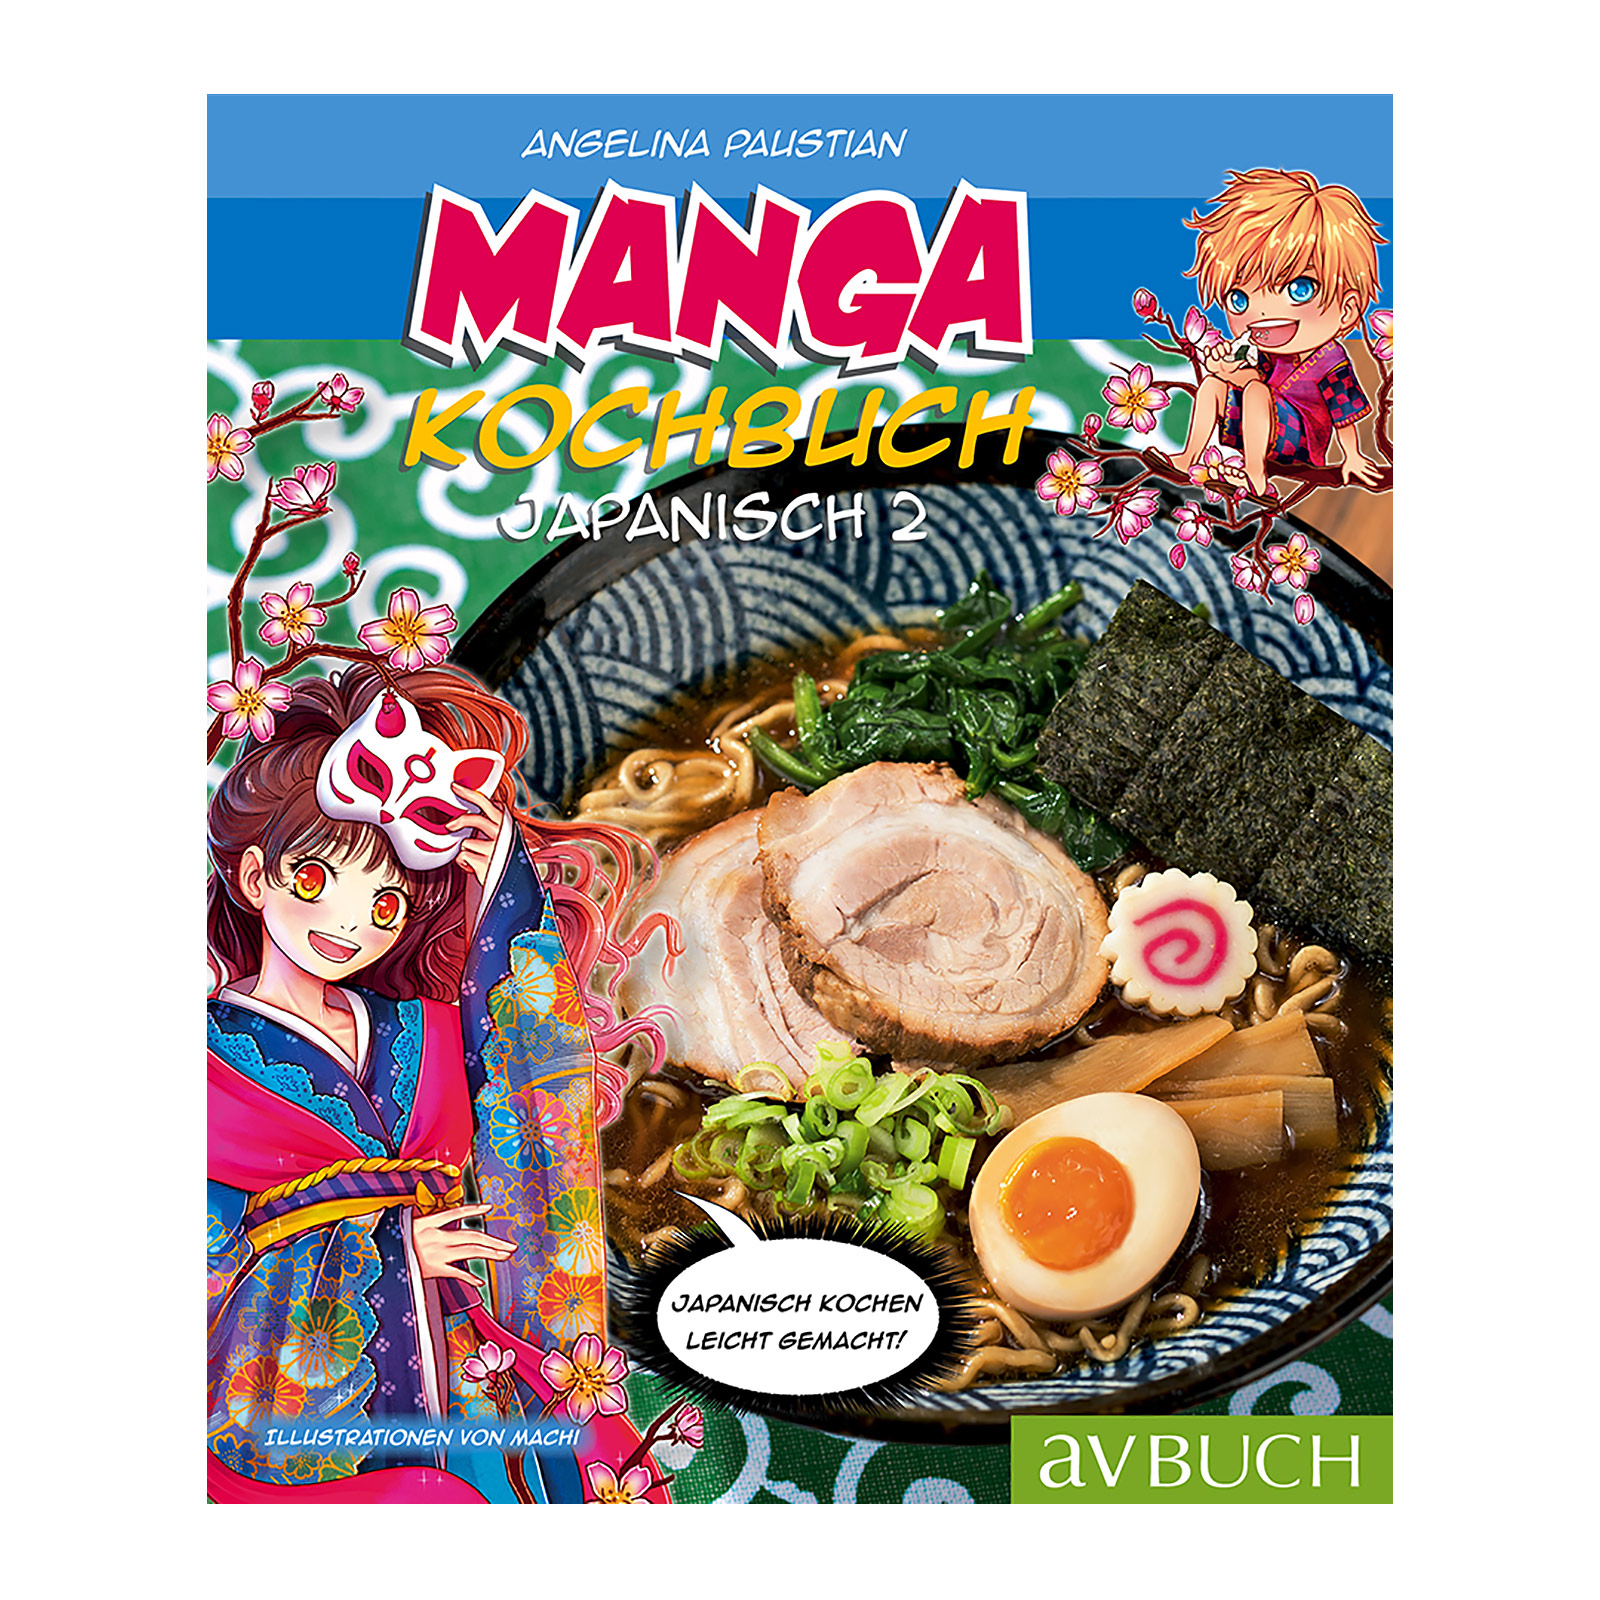 Manga Kochbuch japanisch 2